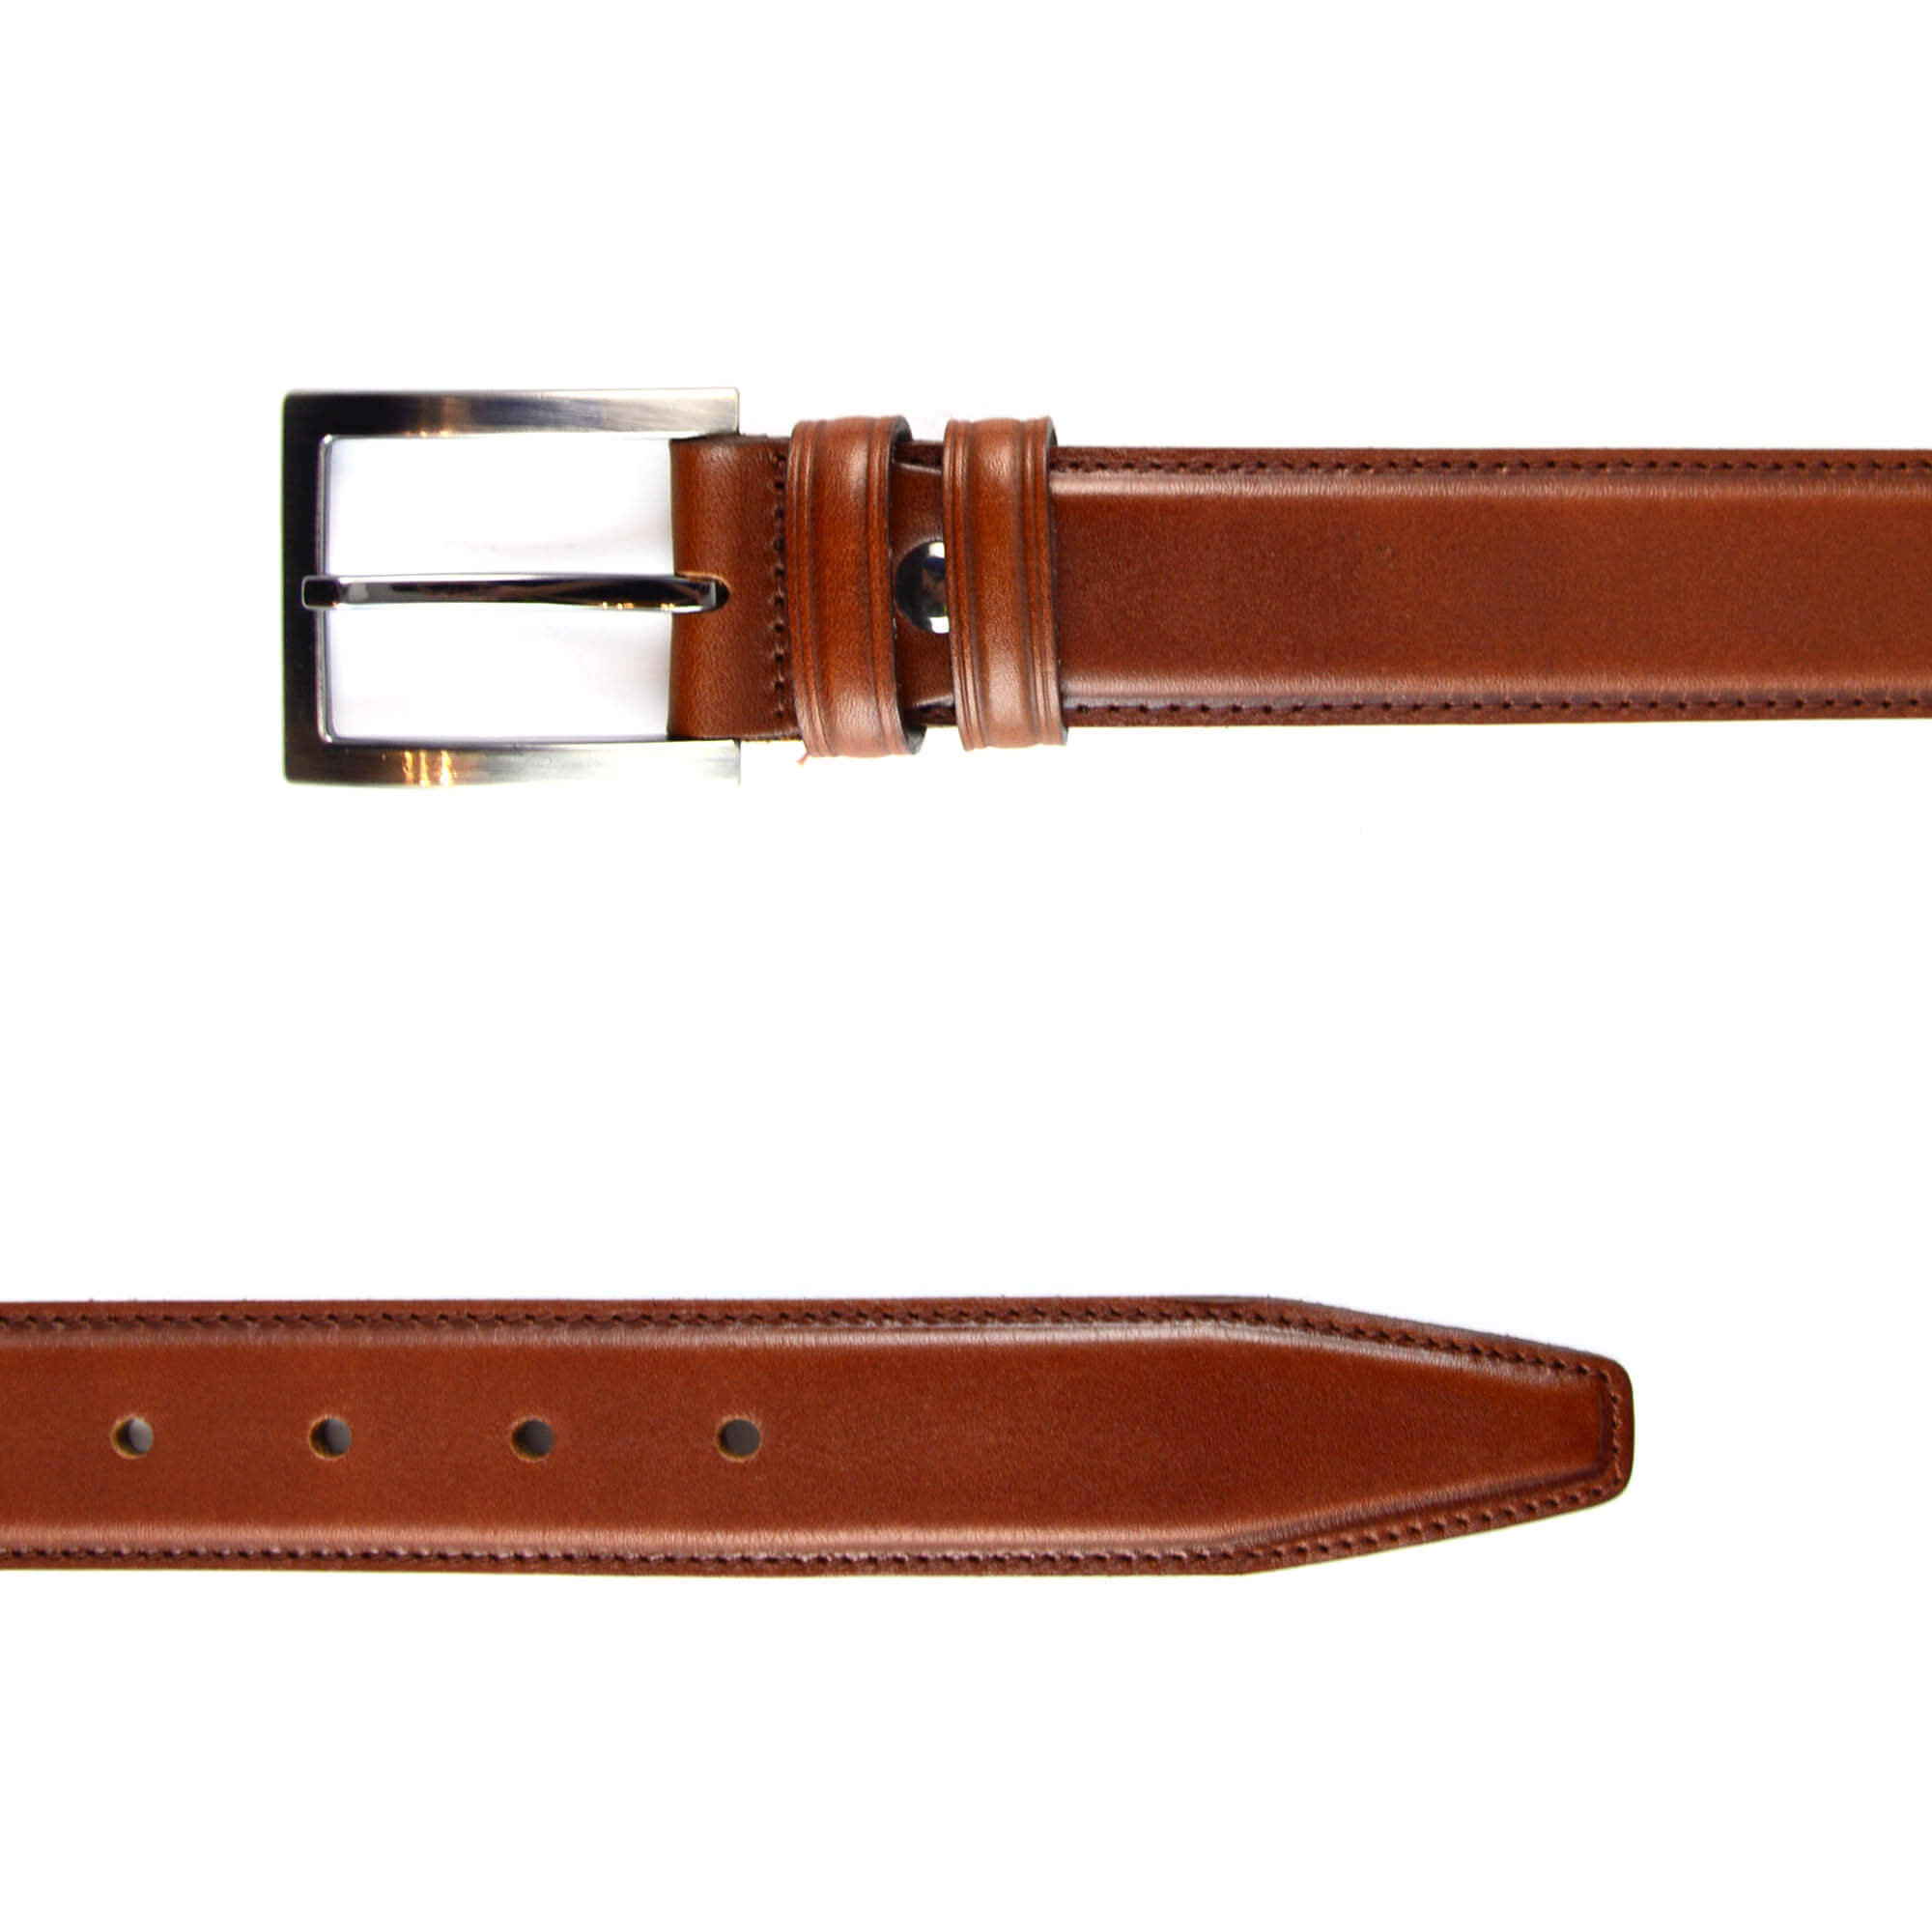 Buy Mens Belt Formal - Cognac Leather - LeatherBeltsOnline.com